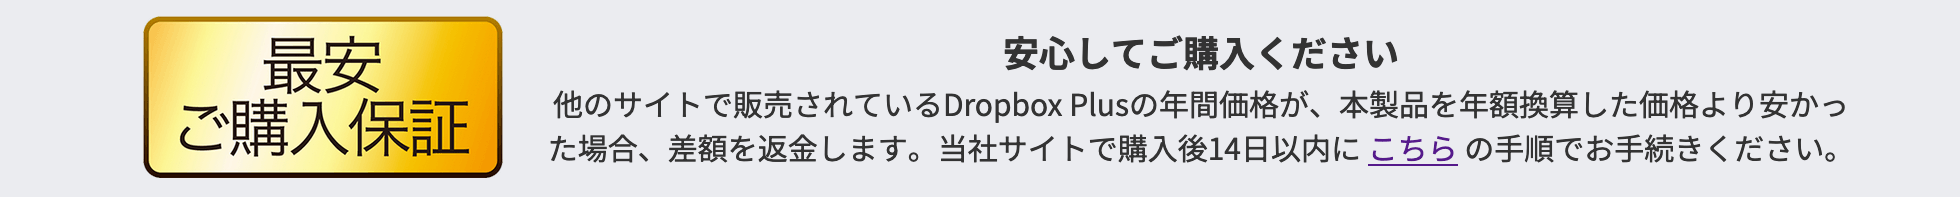 Dropbox クーポン 最安値